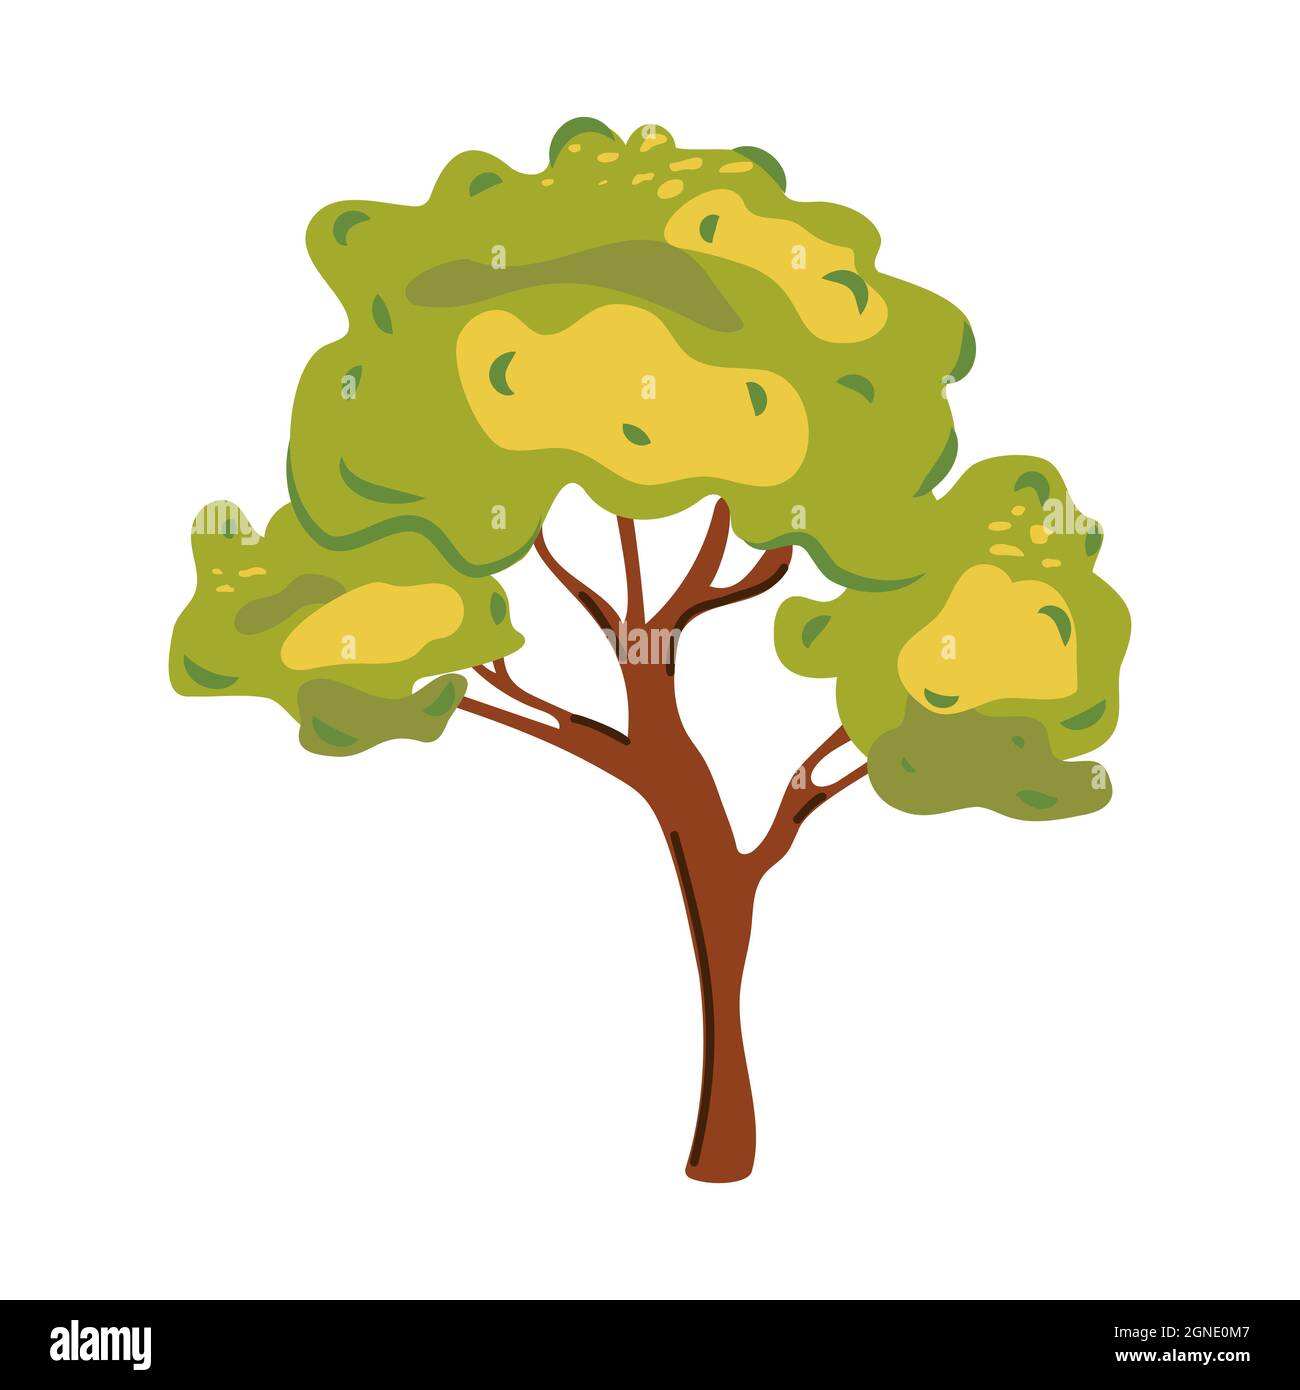 Albero in stile piatto. Cartoon tree con corona verde e tronco marrone isolato su sfondo bianco. Icona astratta moderna con colorato stile albero piatto Illustrazione Vettoriale